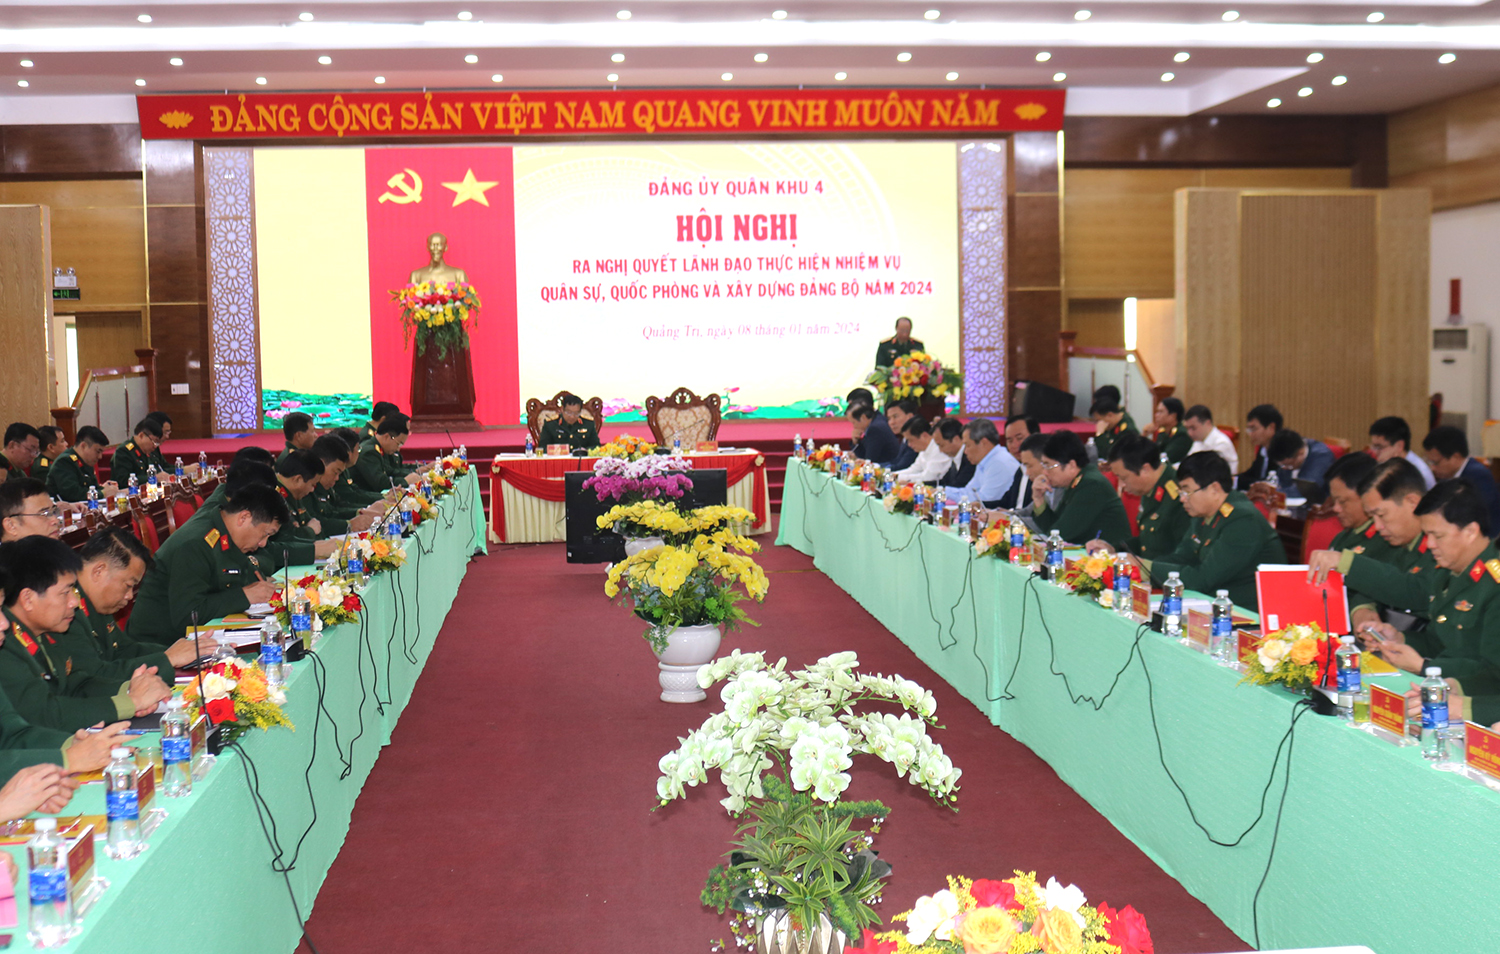 Đảng ủy Quân khu 4: Tổ chức hội nghị ra nghị quyết lãnh đạo thực hiện nhiệm vụ quân sự, quốc phòng năm 2024